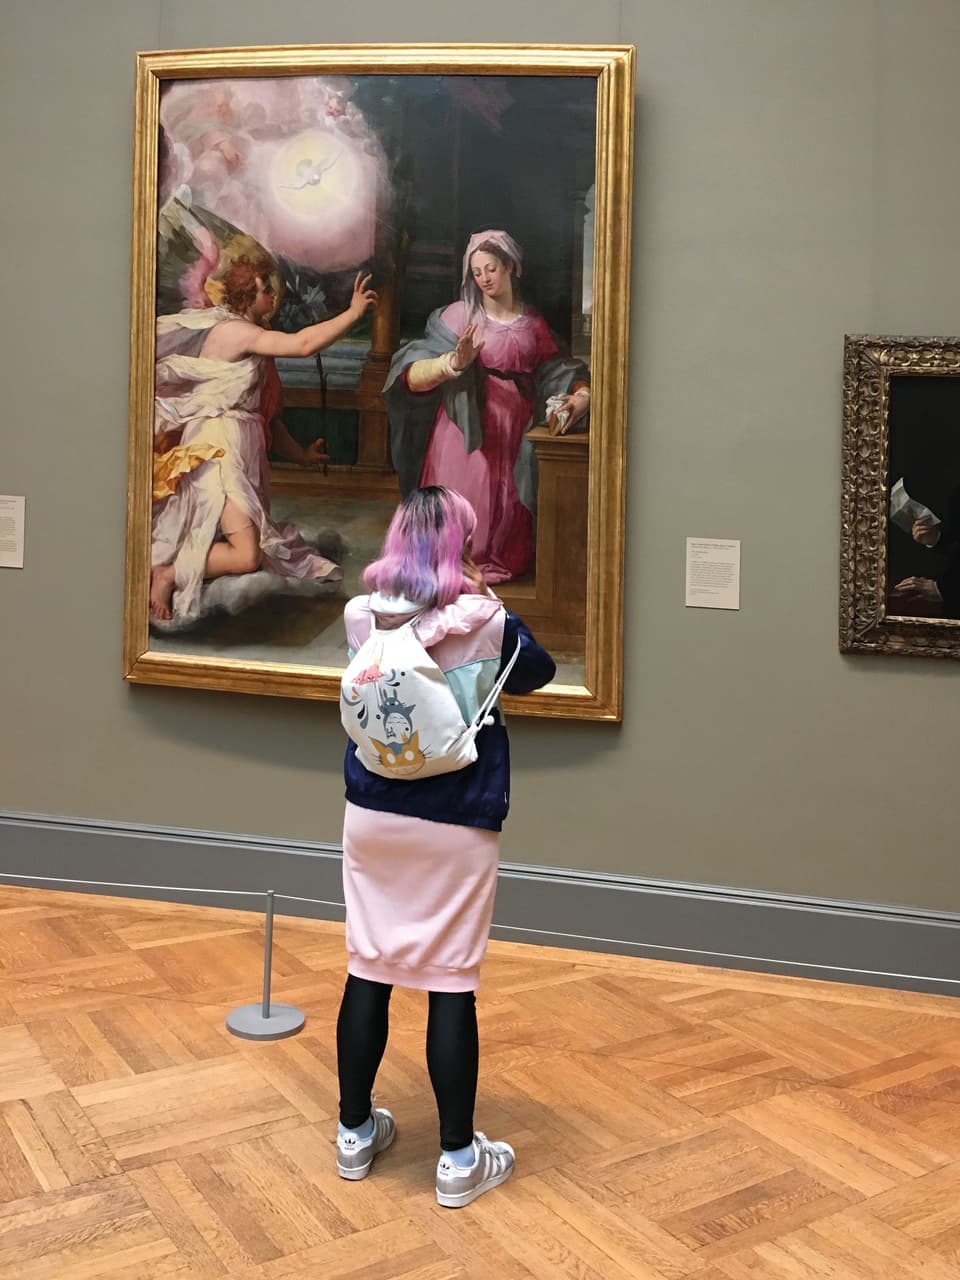 Junge Frau mit pinkem Rock und pinken Haaren steht vor einem grossen Gemälde im Museum